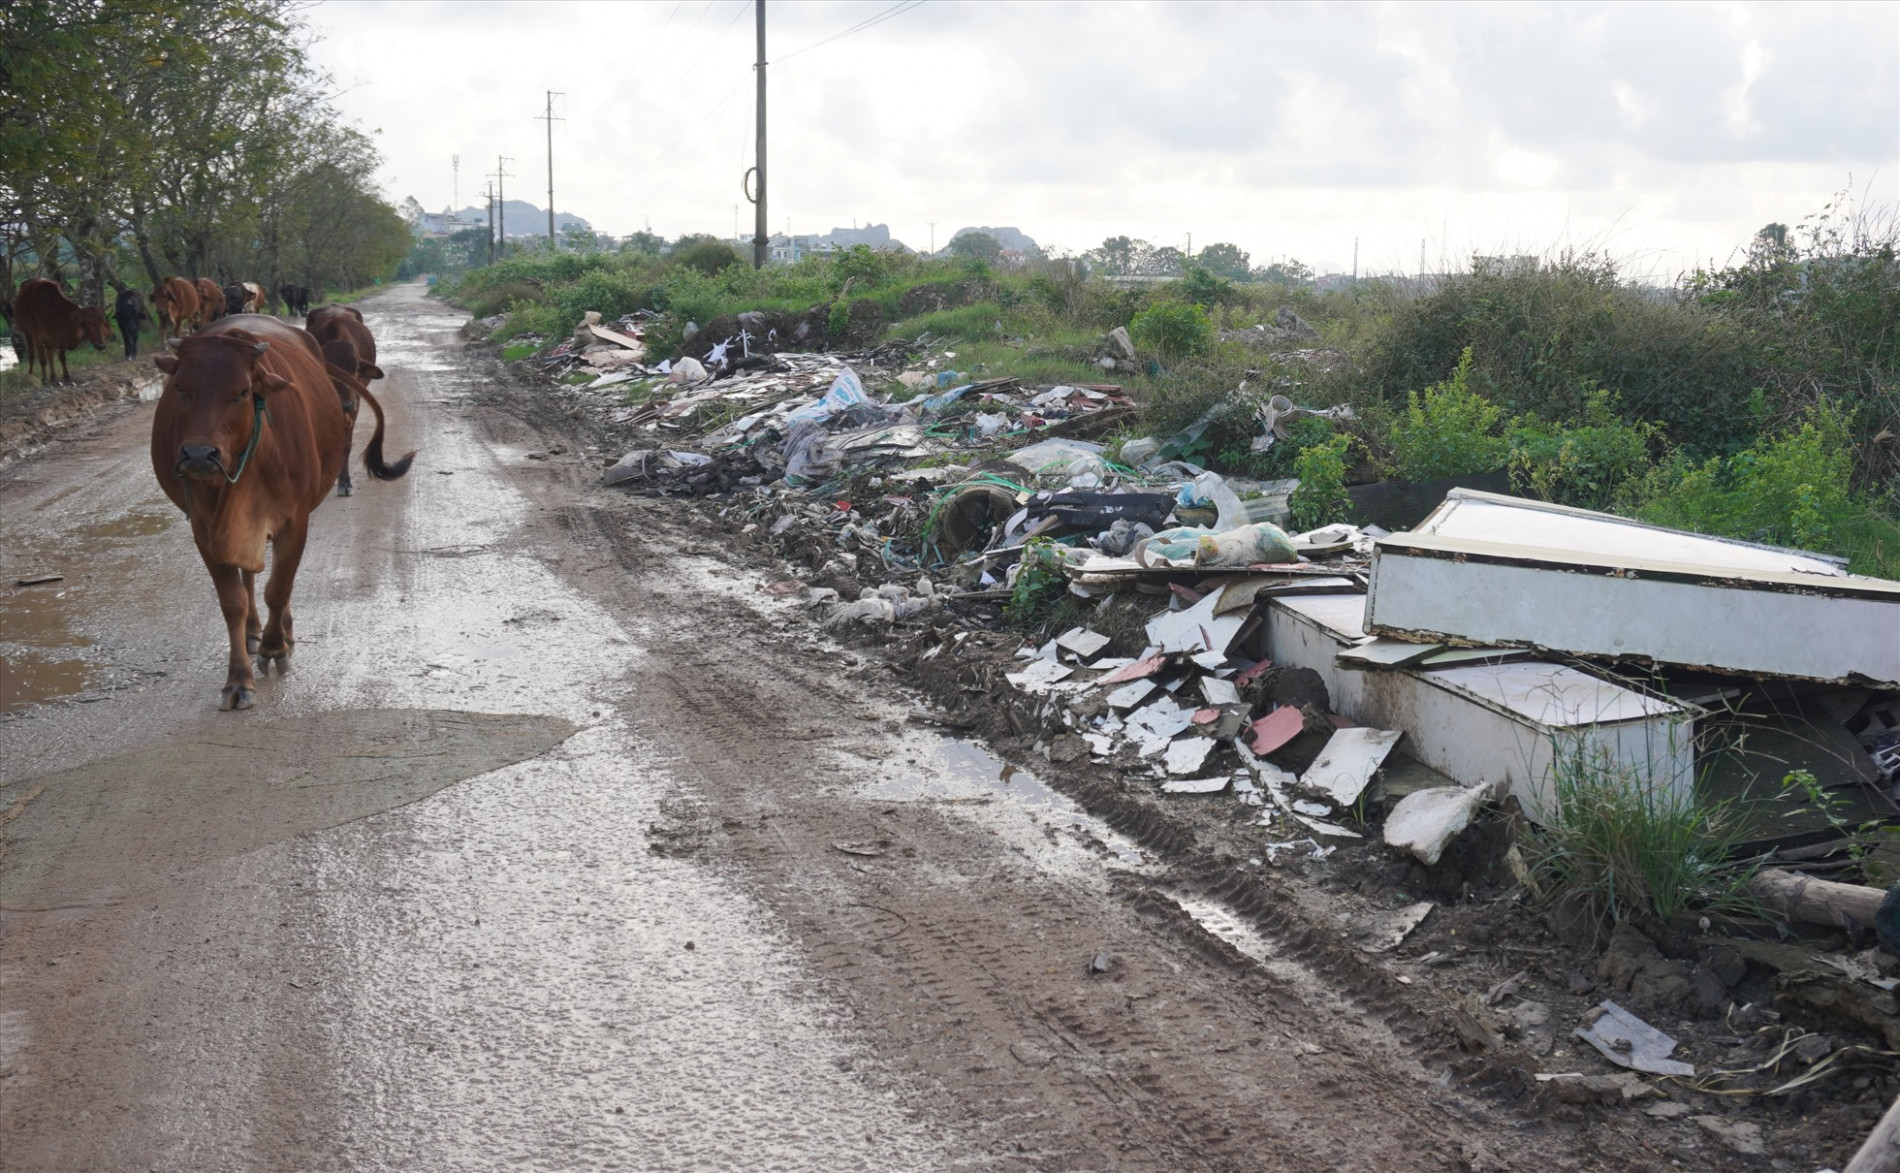 Ghi nhận thực tế cho thấy, rác thải bủa vây tại nhiều điểm ở quanh khu công nghiệp Tây Bắc Ga. Ảnh: Quách Du